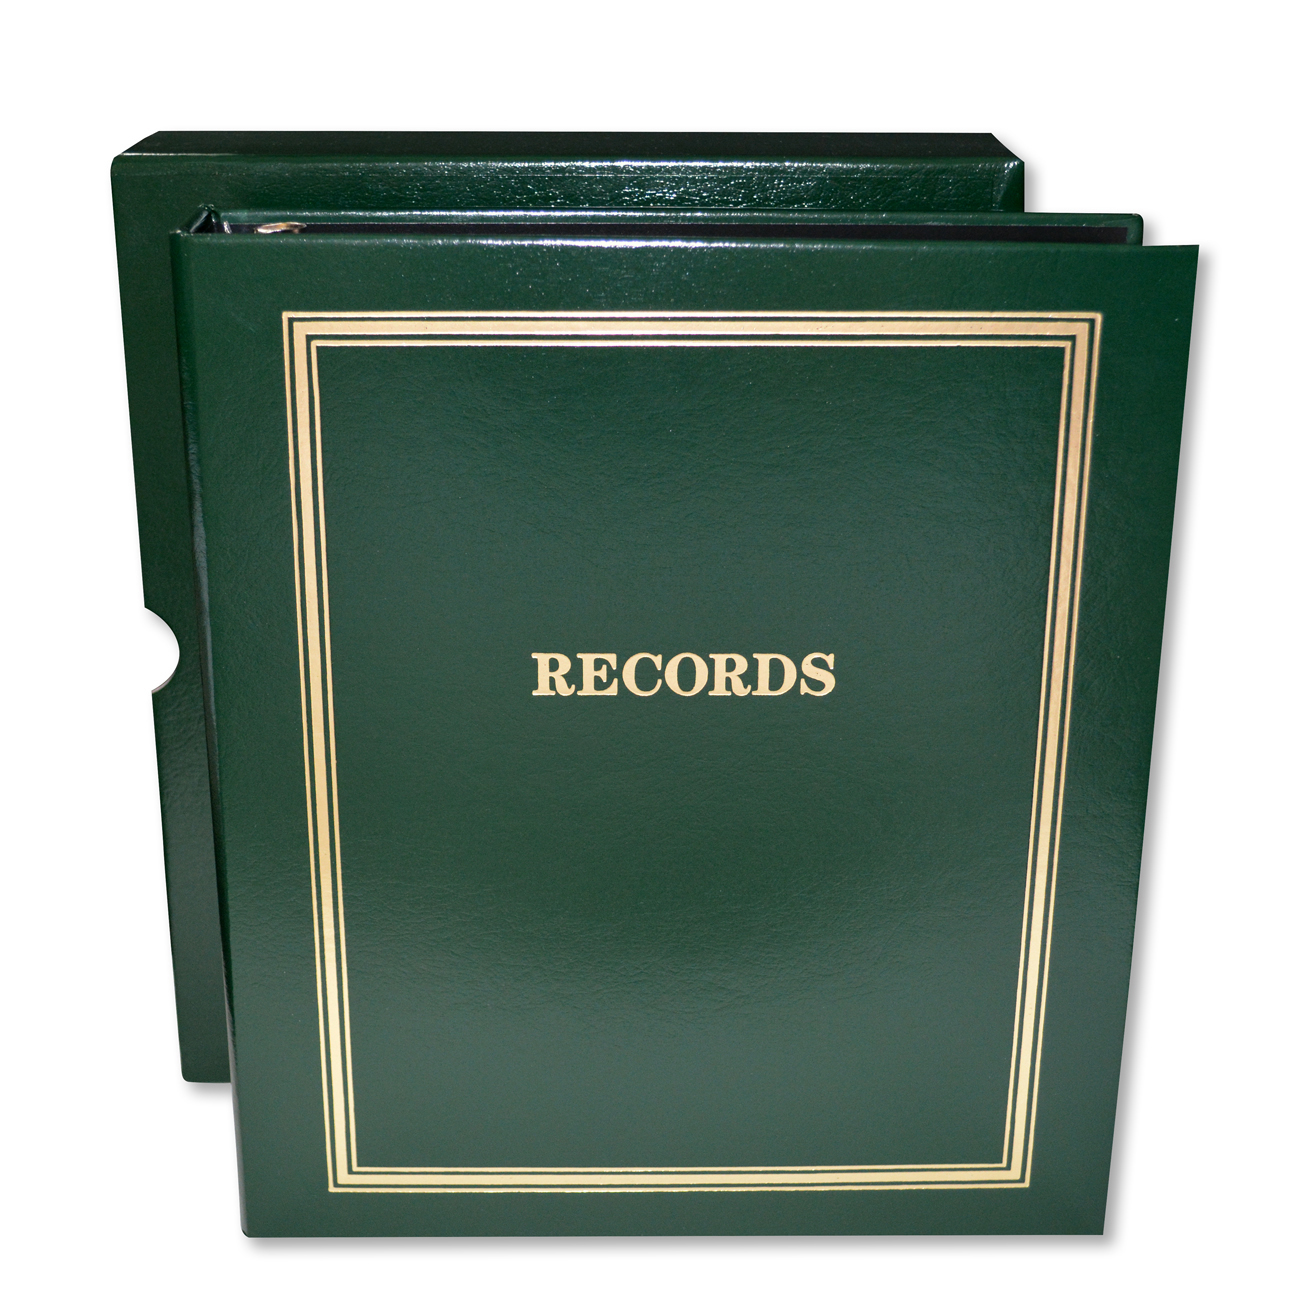 Estate Planning "Records" Portfolio